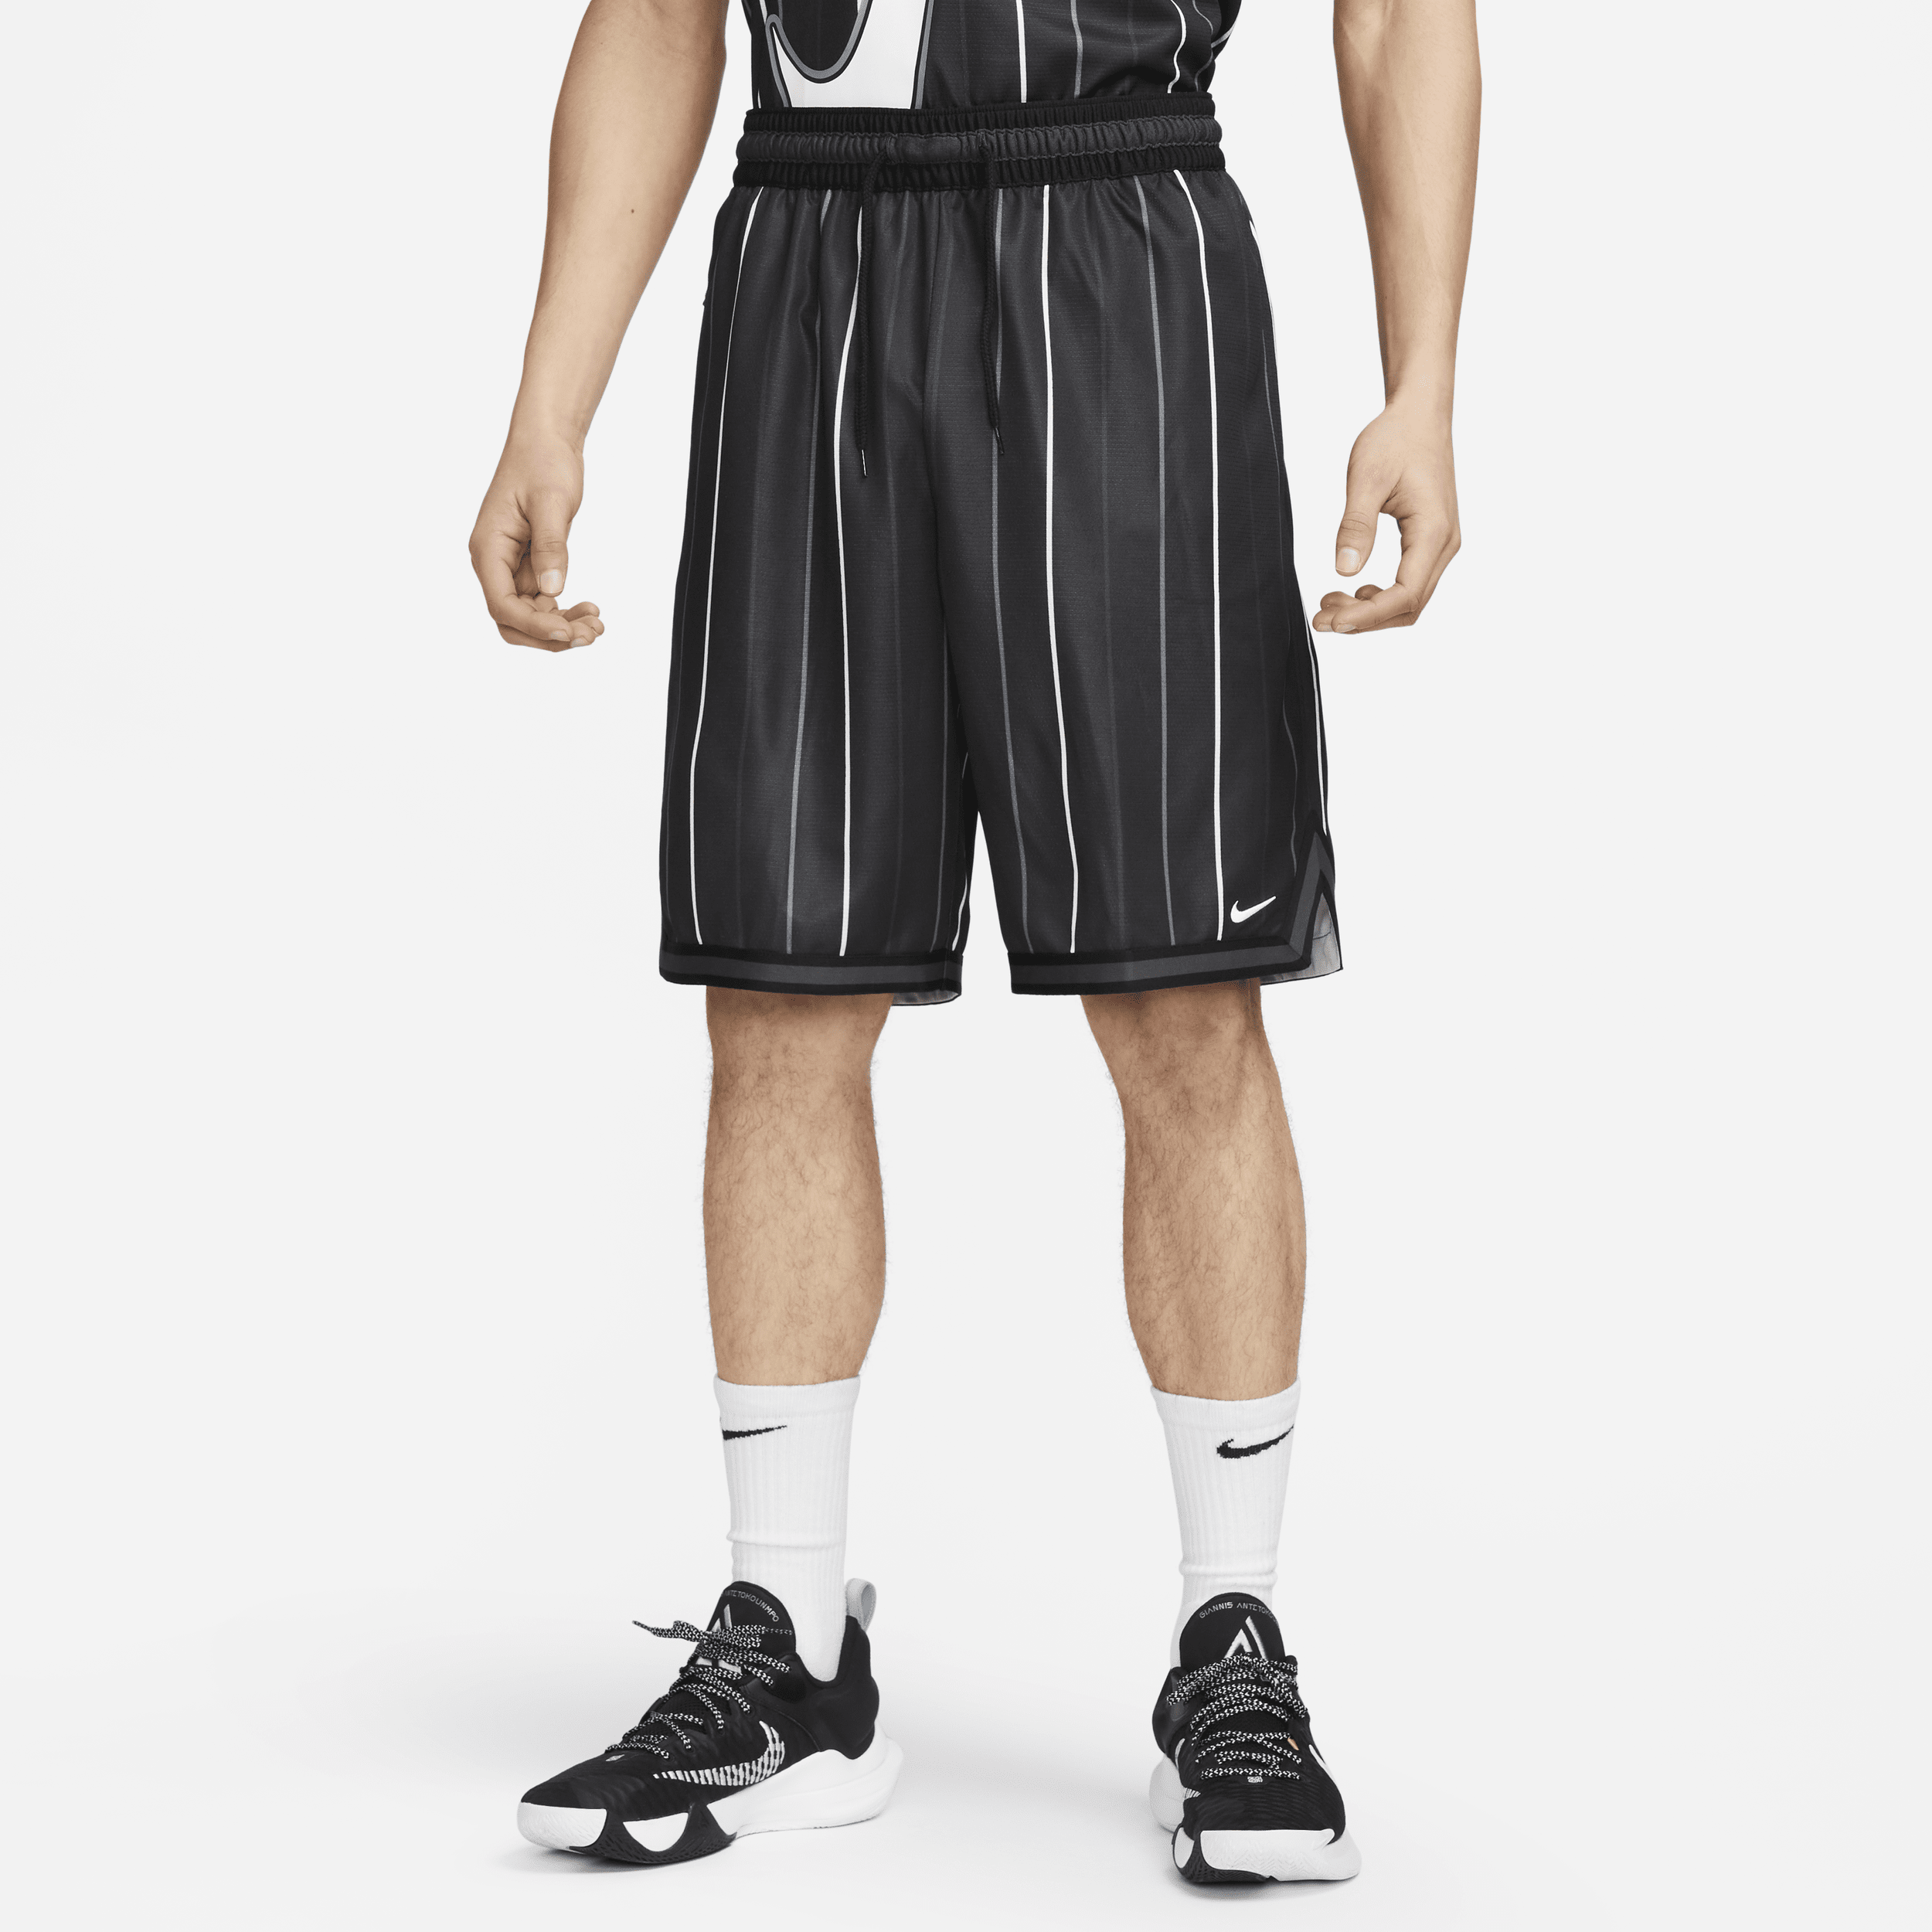 Nike Dri-FIT DNA-basketballshorts (25 cm) til mænd - sort